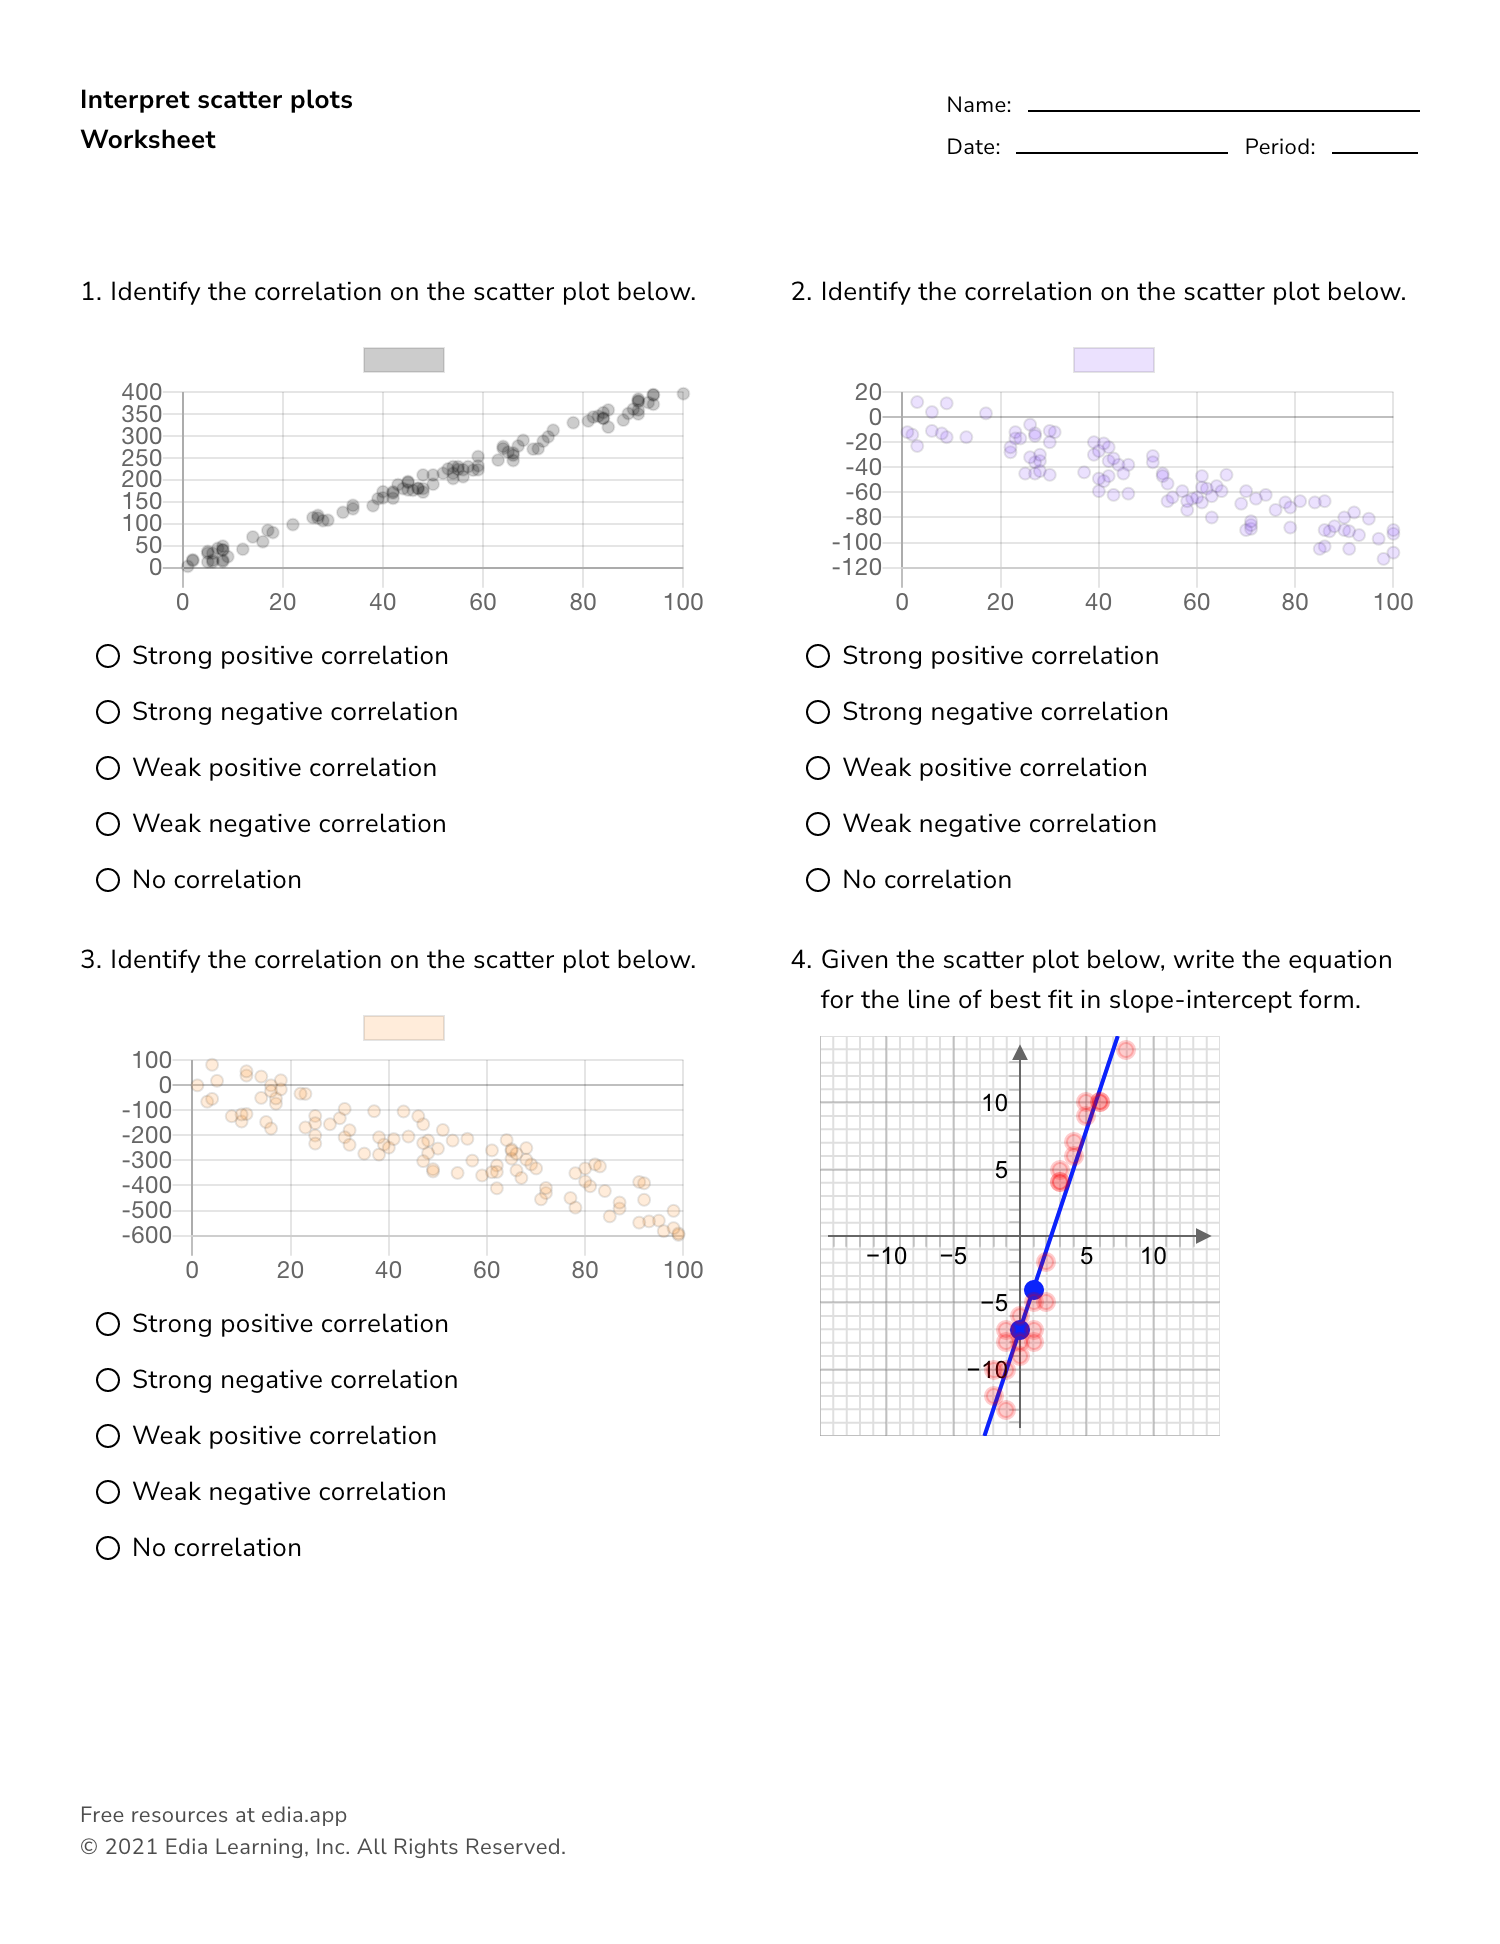 Interpret Scatter Plots - Worksheet Within Scatter Plot Correlation Worksheet